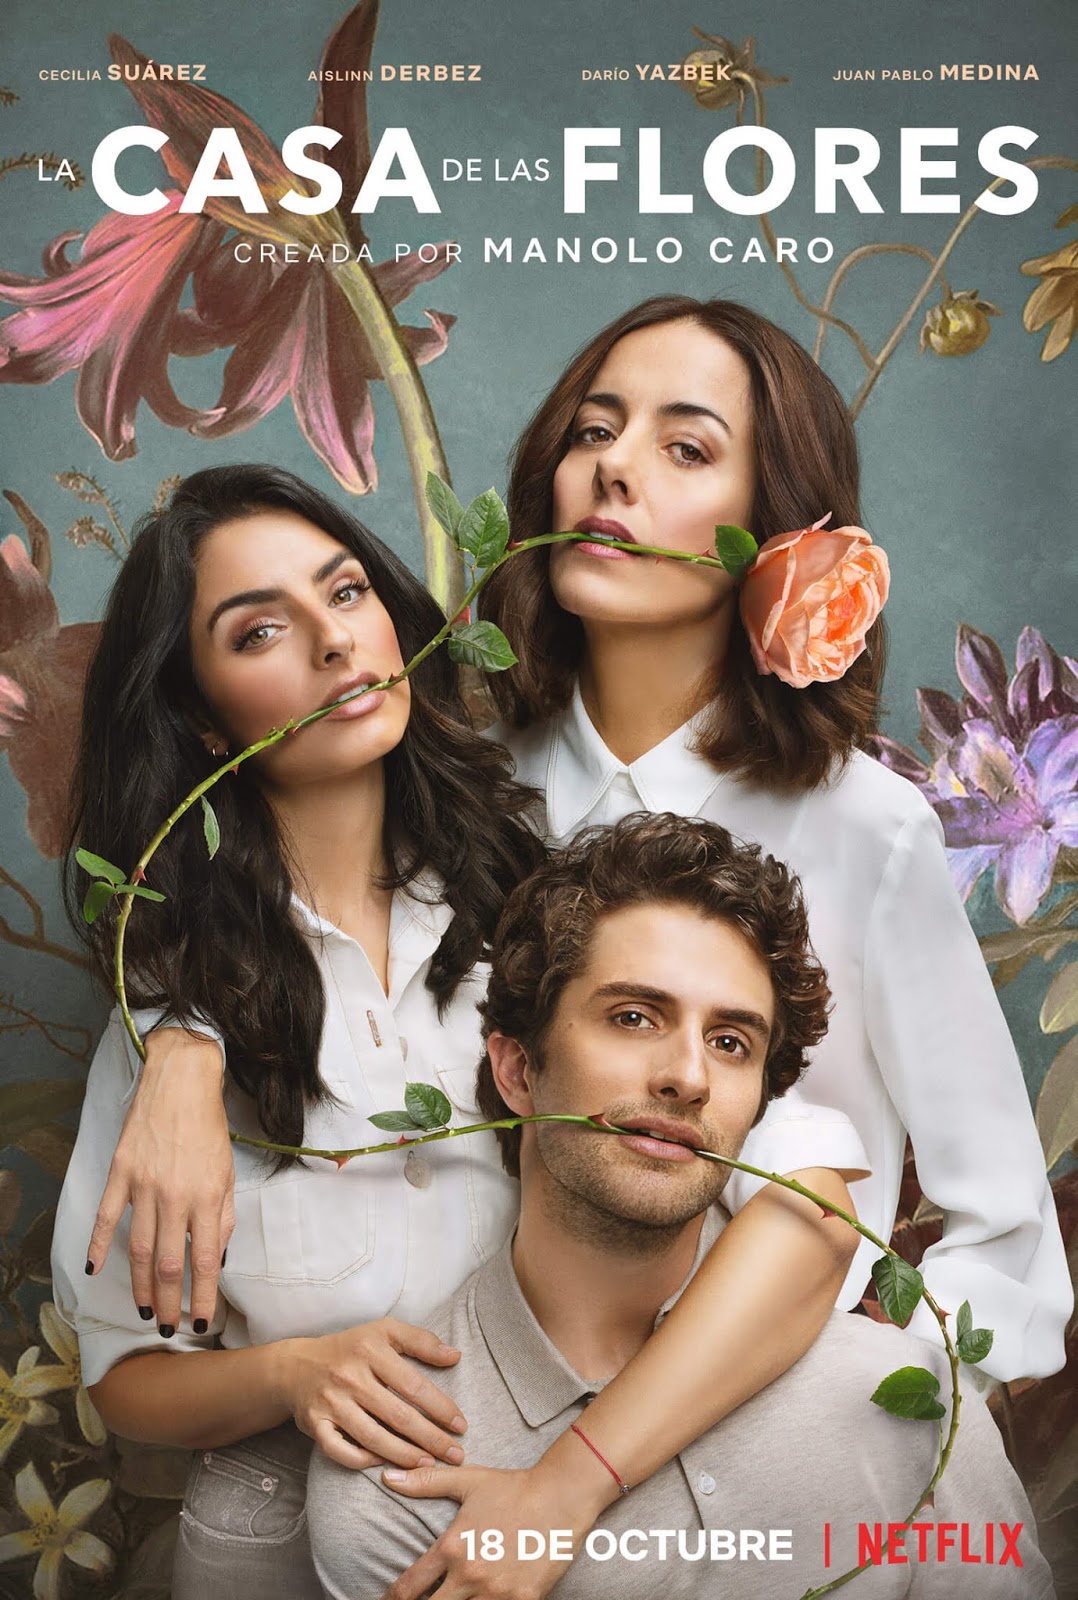 La Casa de las Flores estrena segunda temporada el 18 de octubre